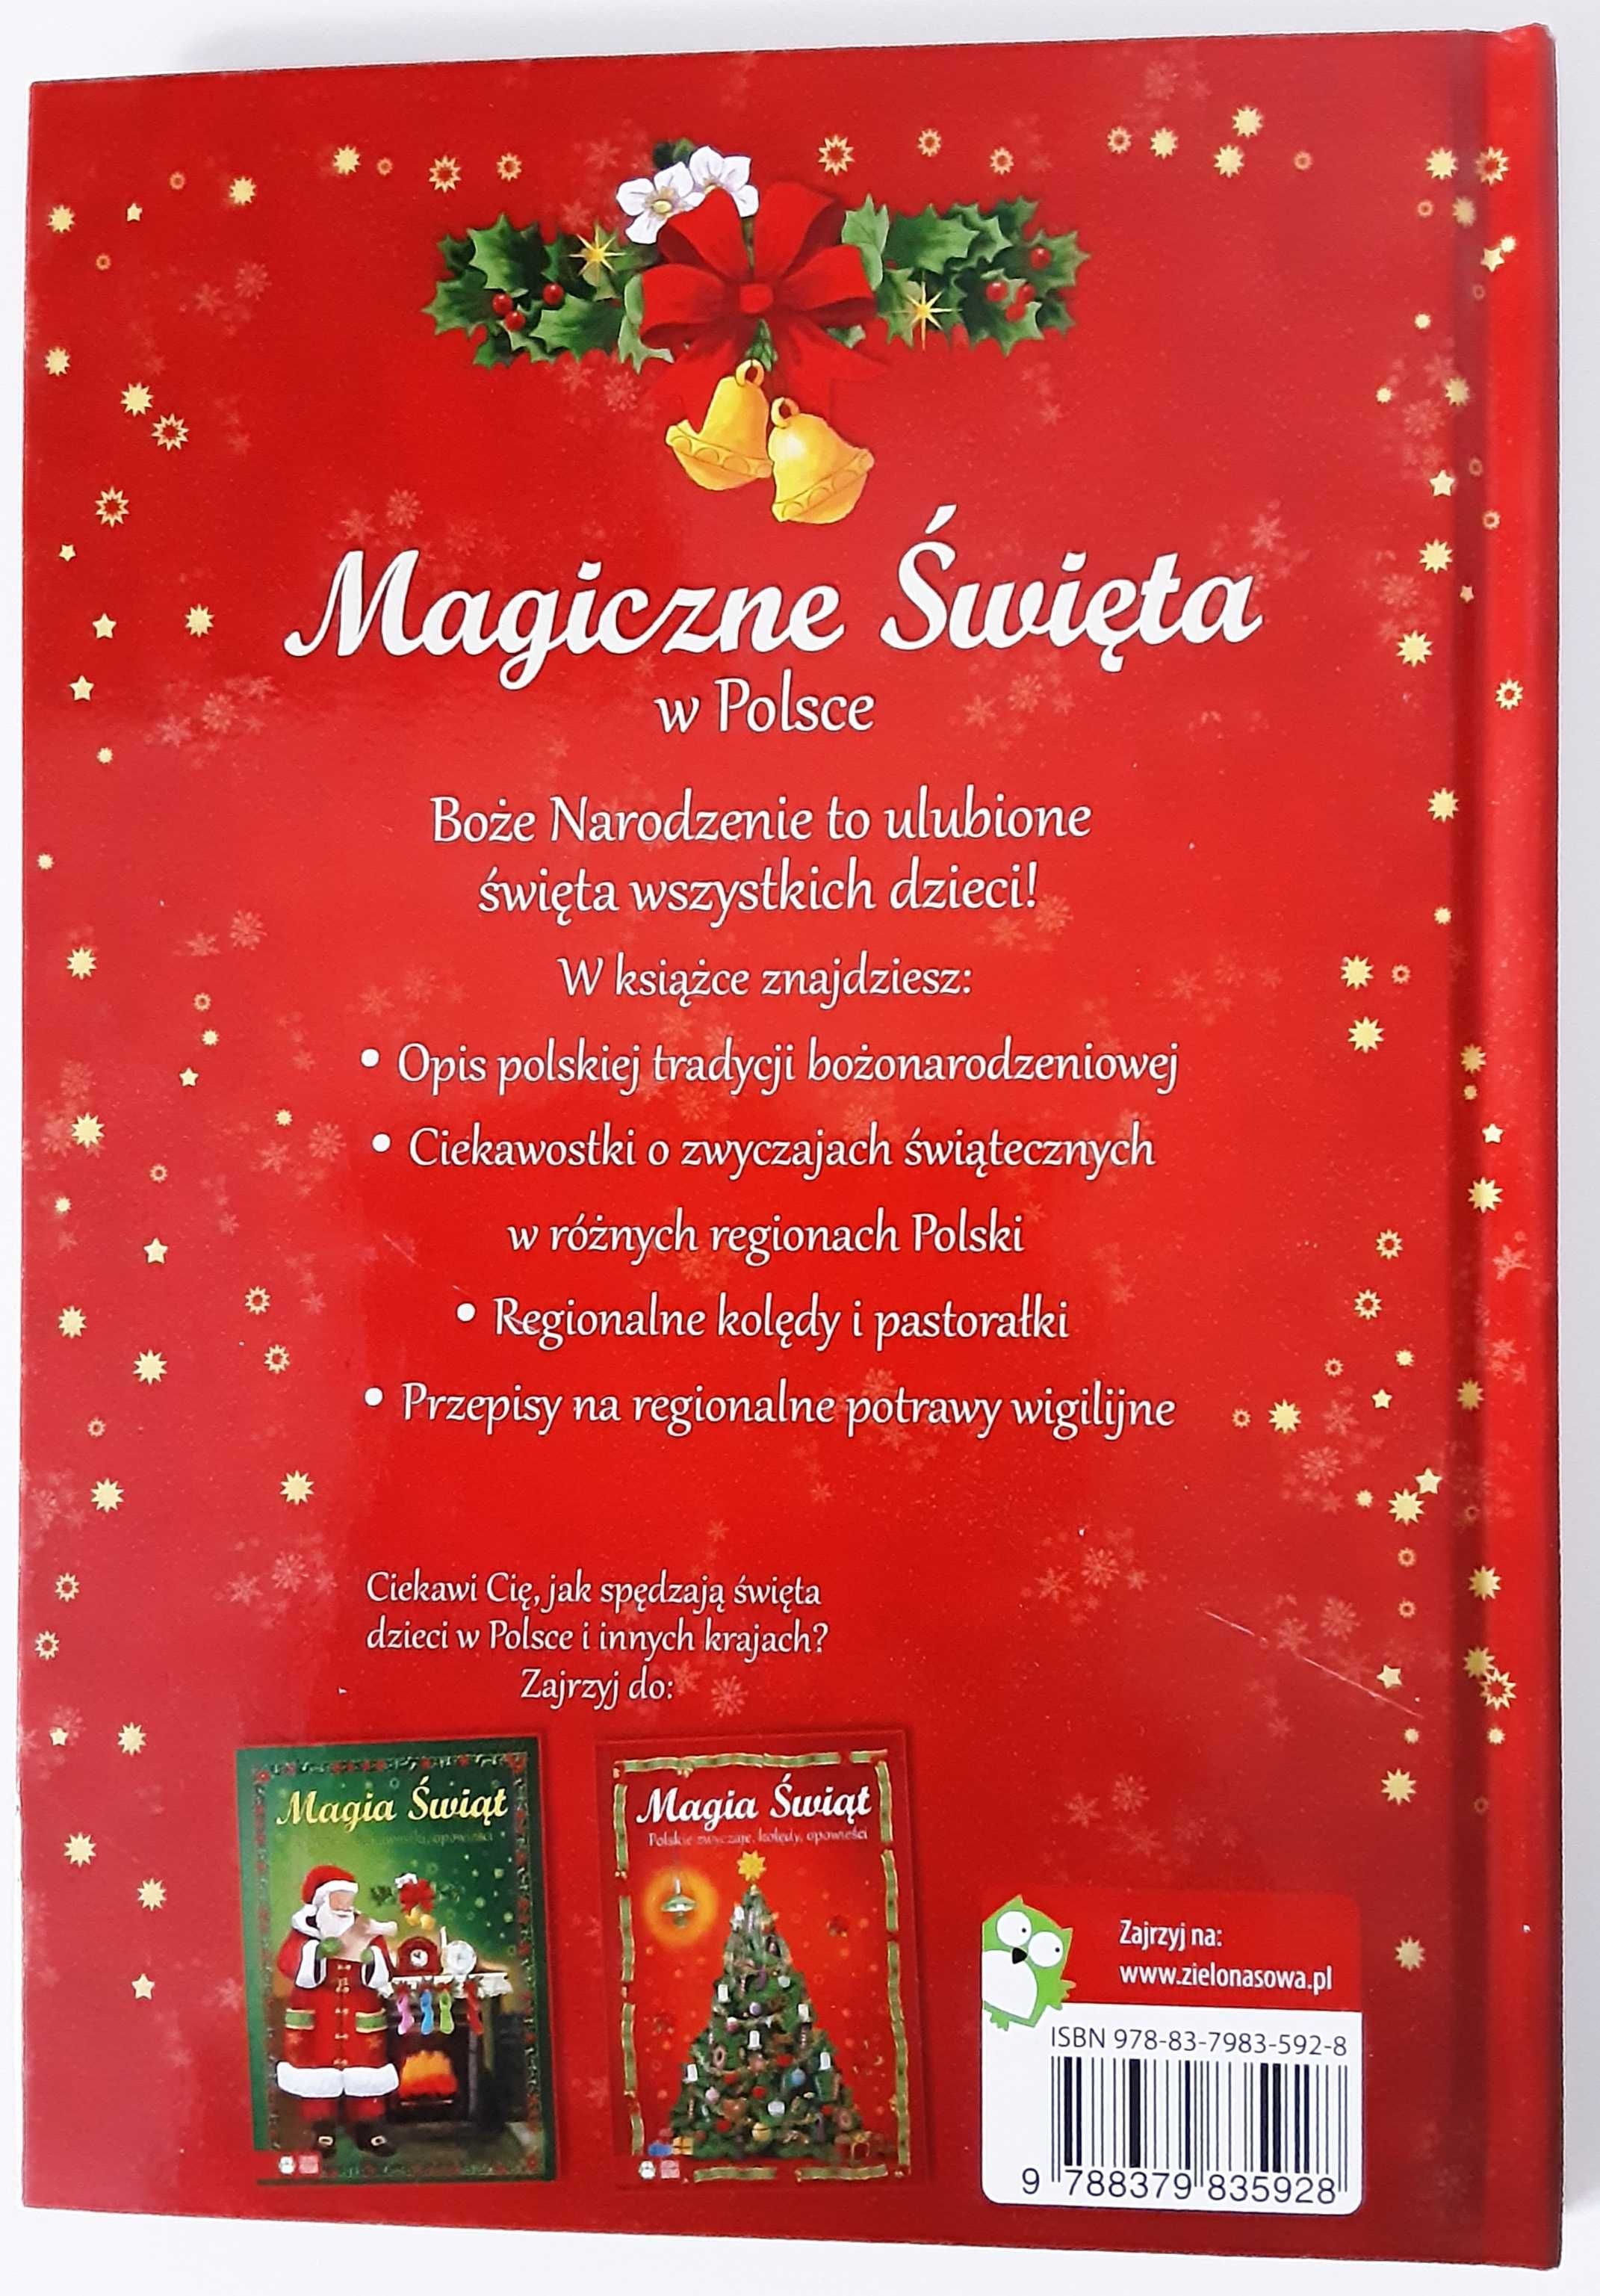 Boże Narodzenie Magiczne święta w Polsce